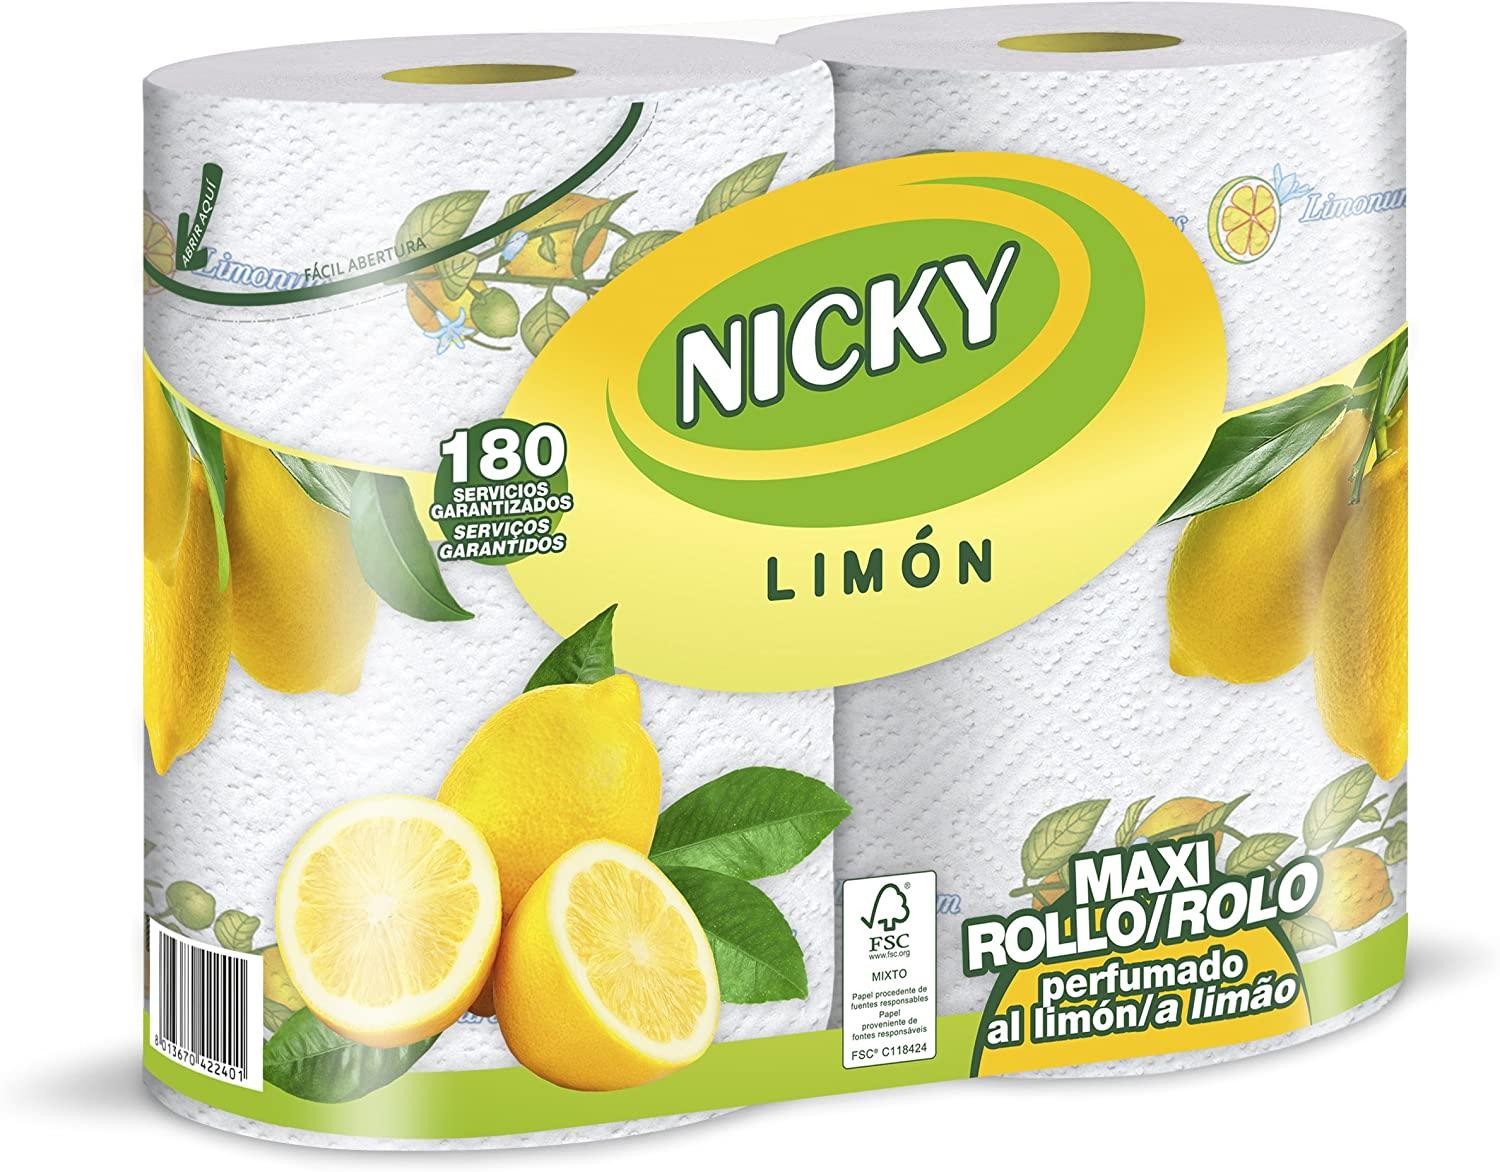 Nicky Cocina limon 2r 